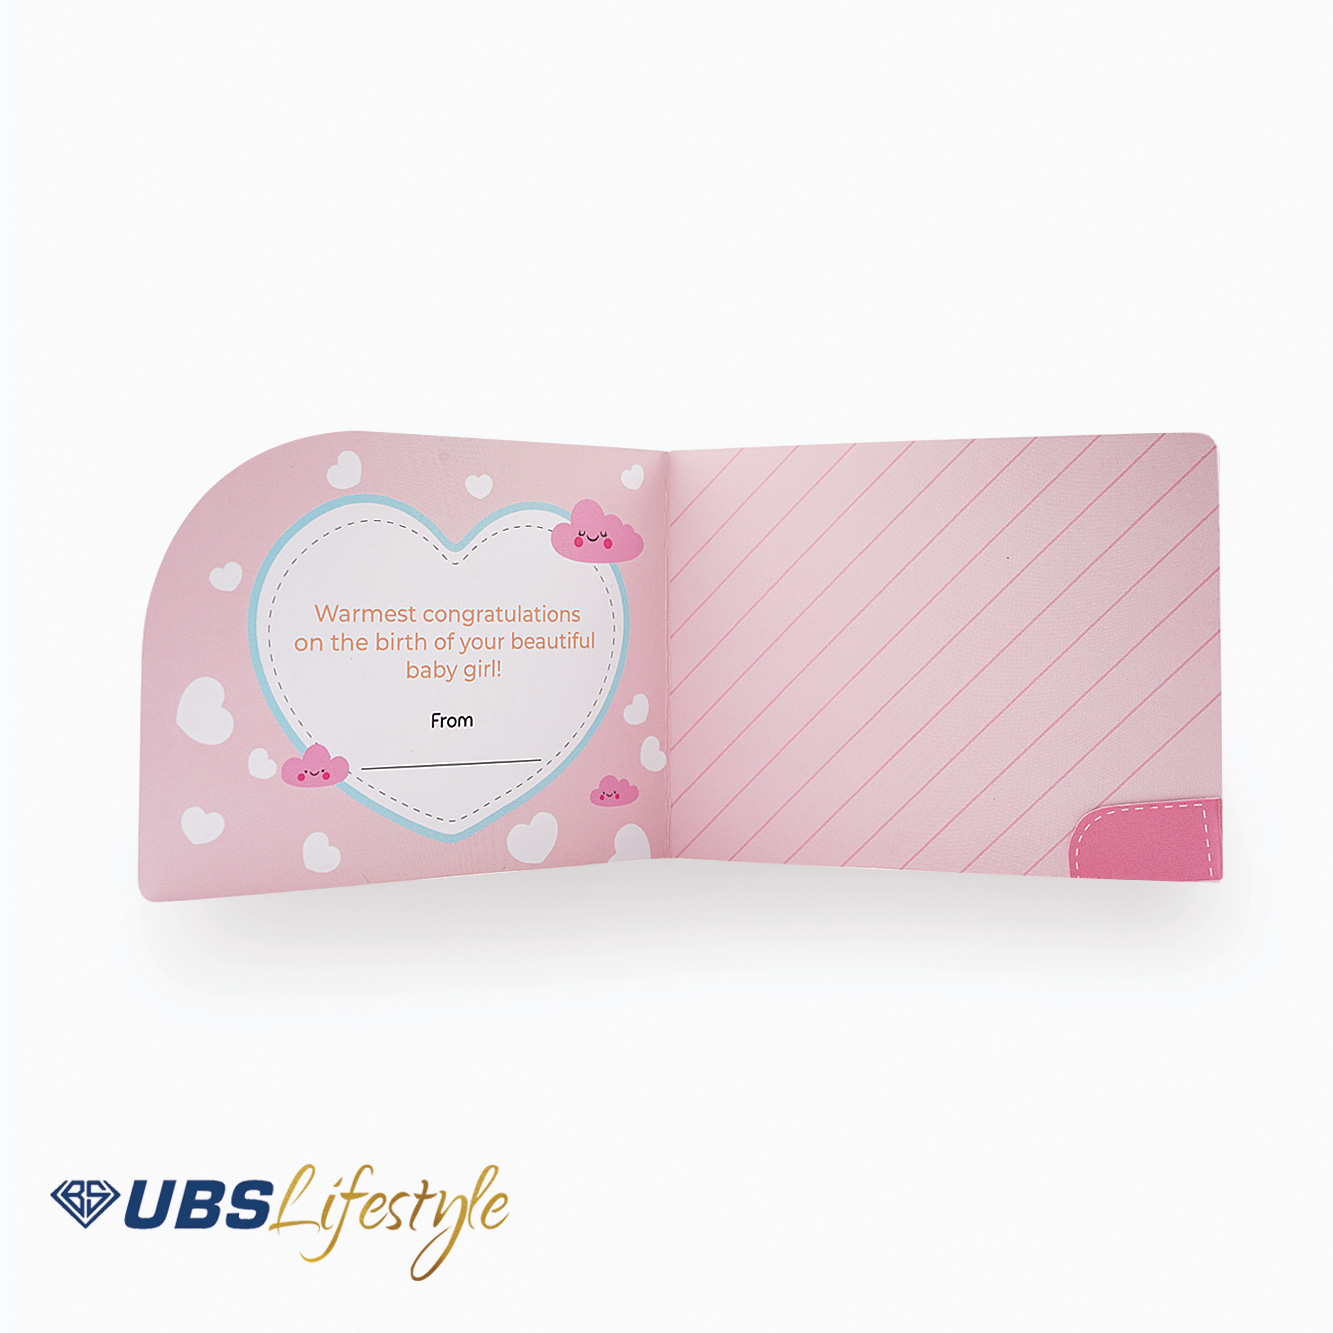 Kartu Ucapan UBS Lifestyle Edisi Newborn Baby Girl - Yakkk0484